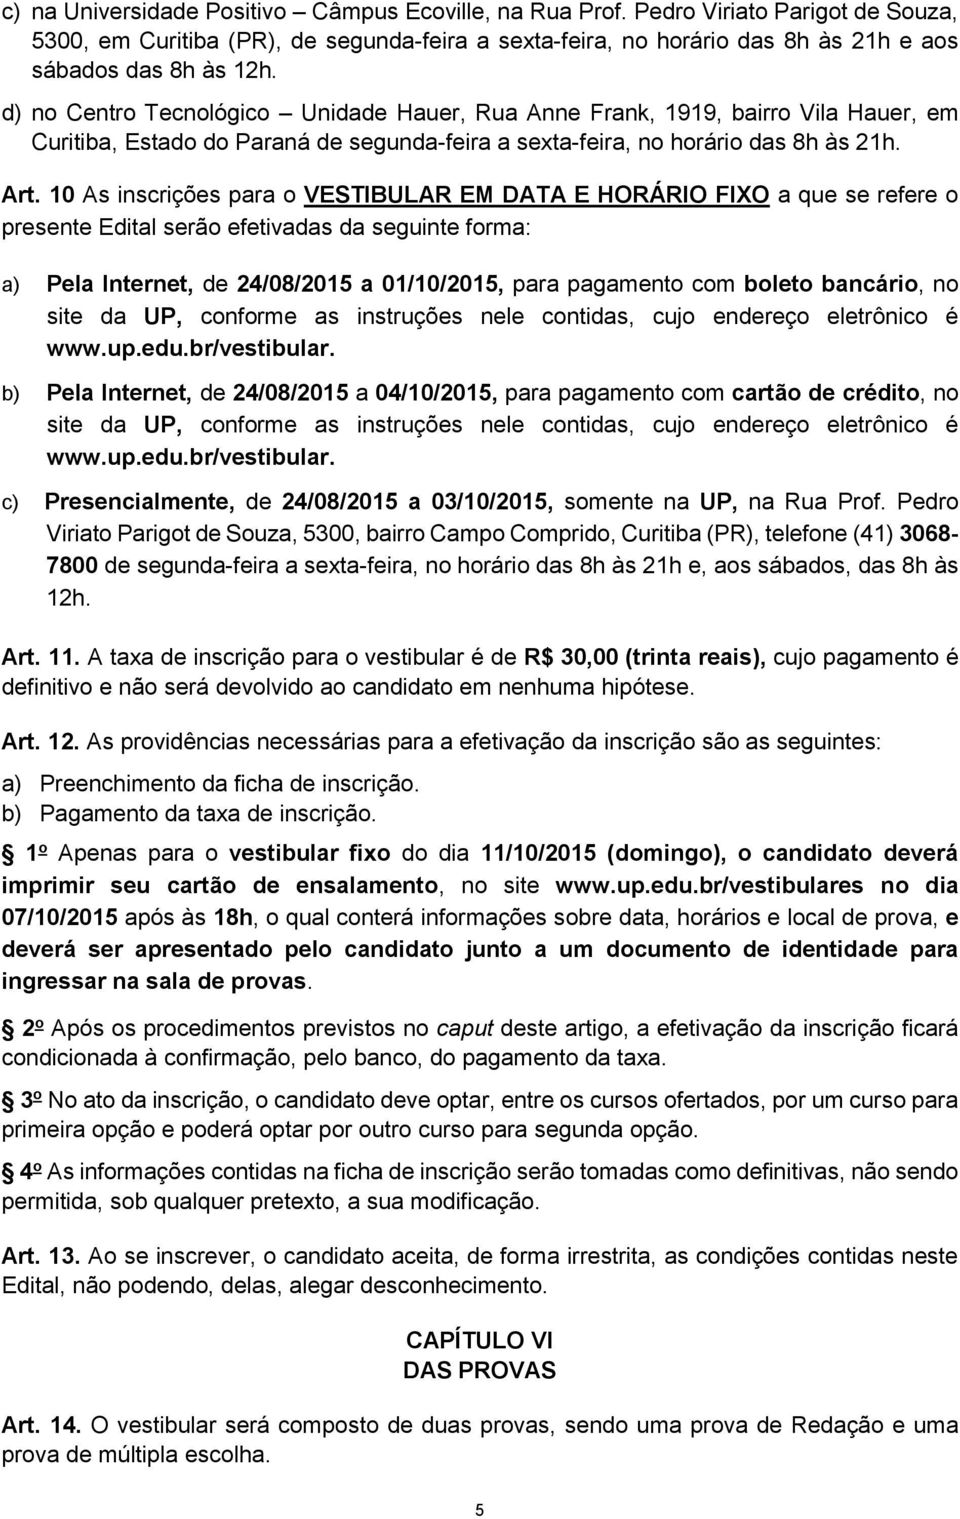 10 As inscrições para o VESTIBULAR EM DATA E HORÁRIO FIXO a que se refere o presente Edital serão efetivadas da seguinte forma: a) Pela Internet, de 24/08/2015 a 01/10/2015, para pagamento com boleto